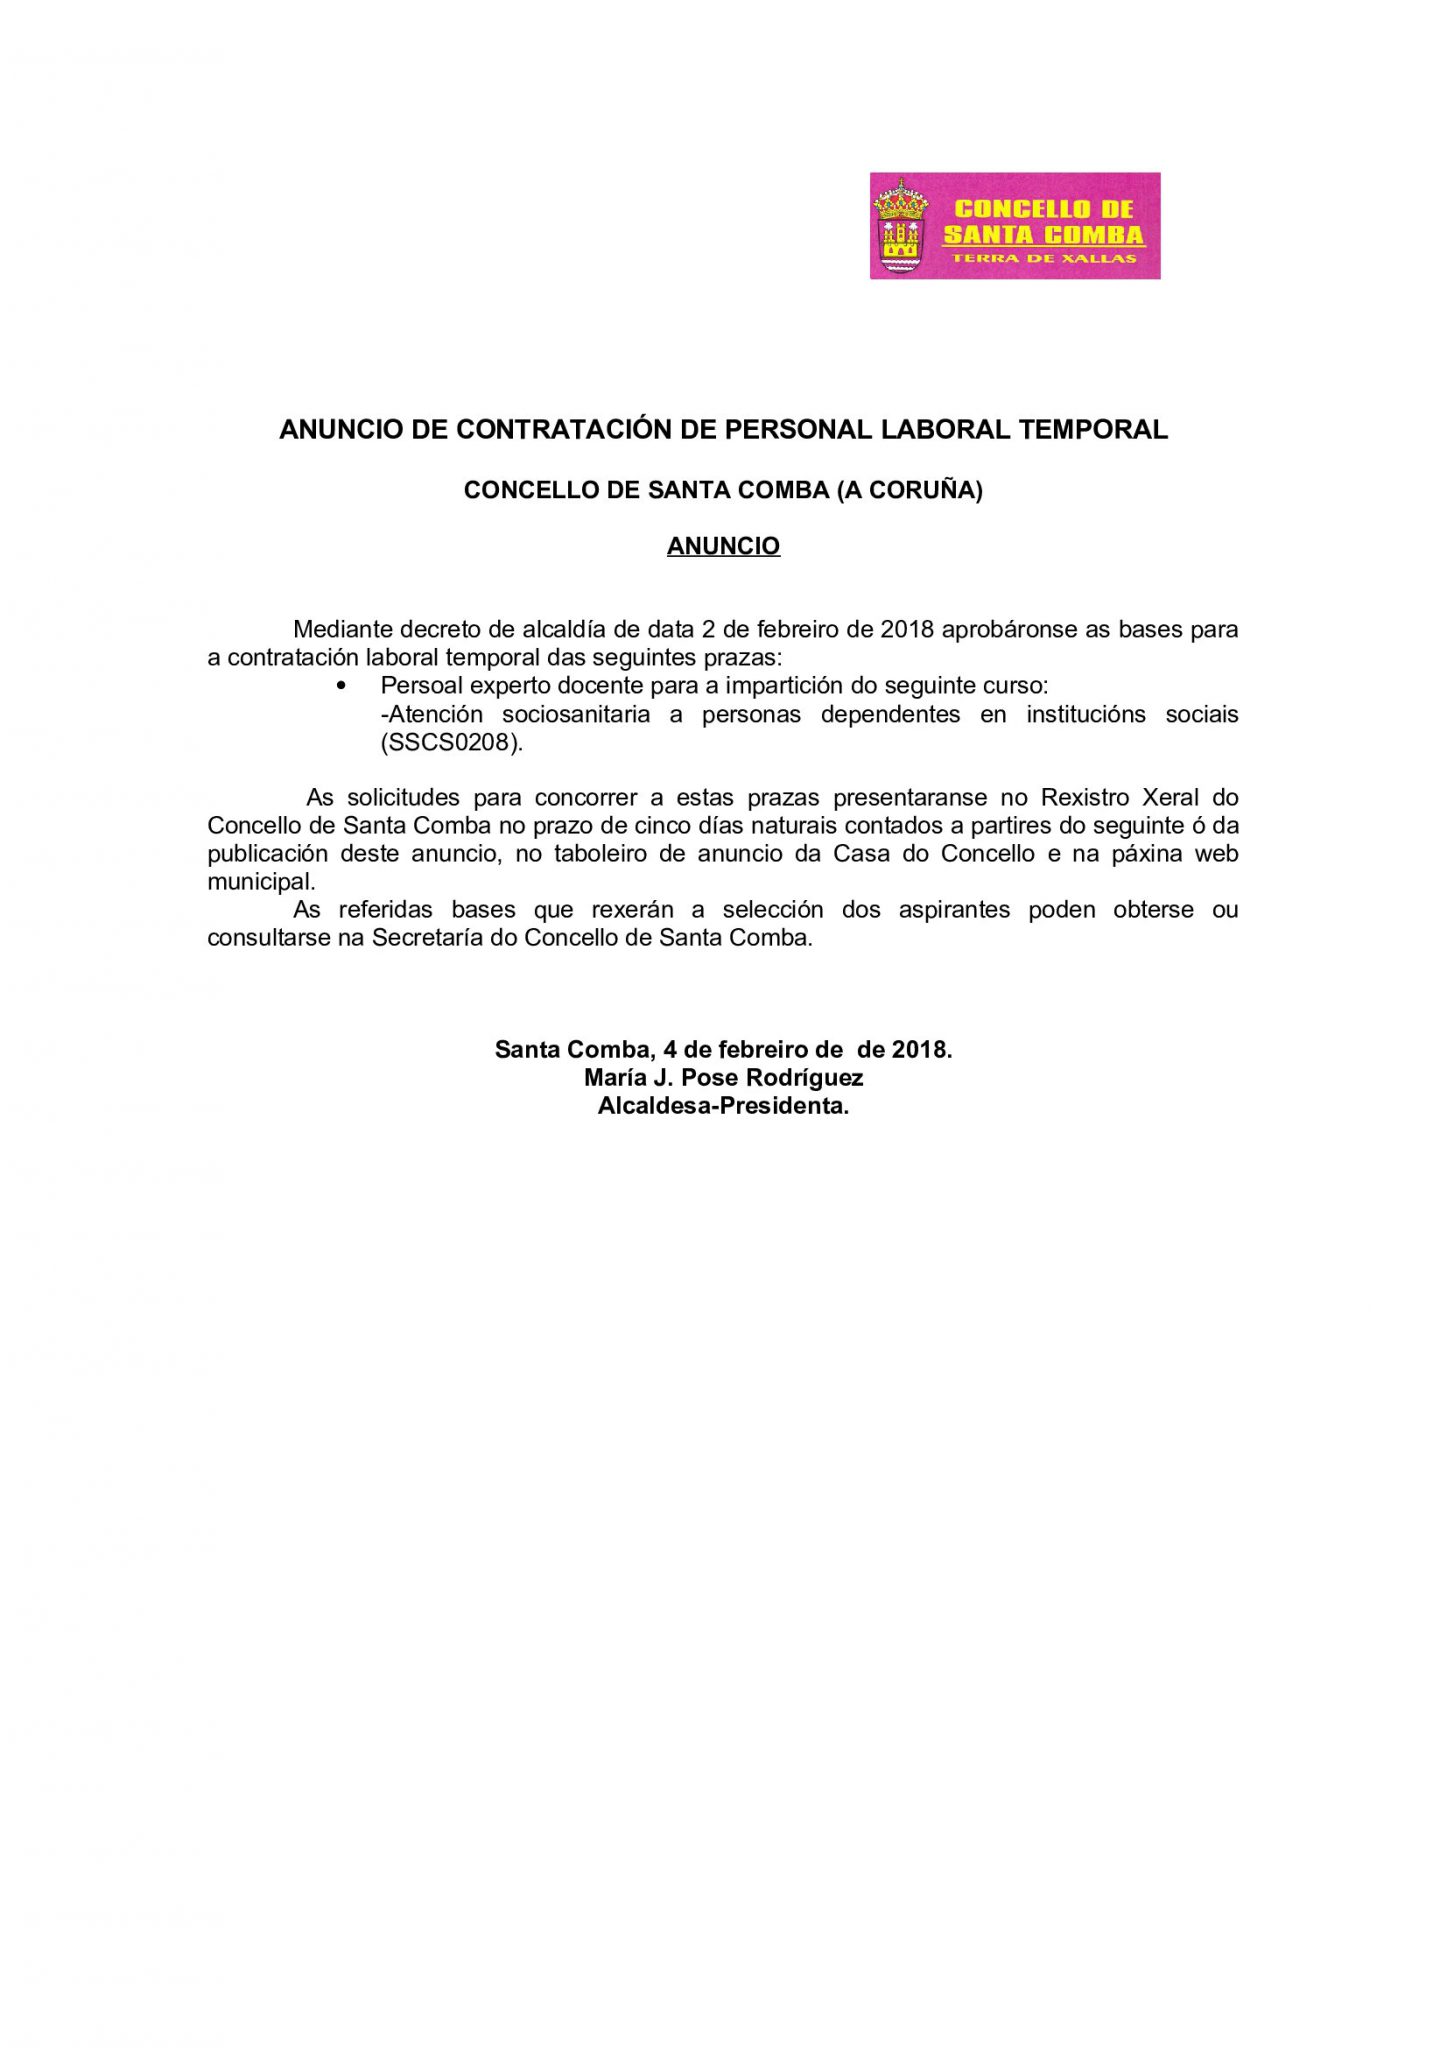 ANUNCIO DE CONTRATACIÓN DE PERSONAL LABORAL TEMPORAL – CONCELLO DE SANTA COMBA (A CORUÑA)